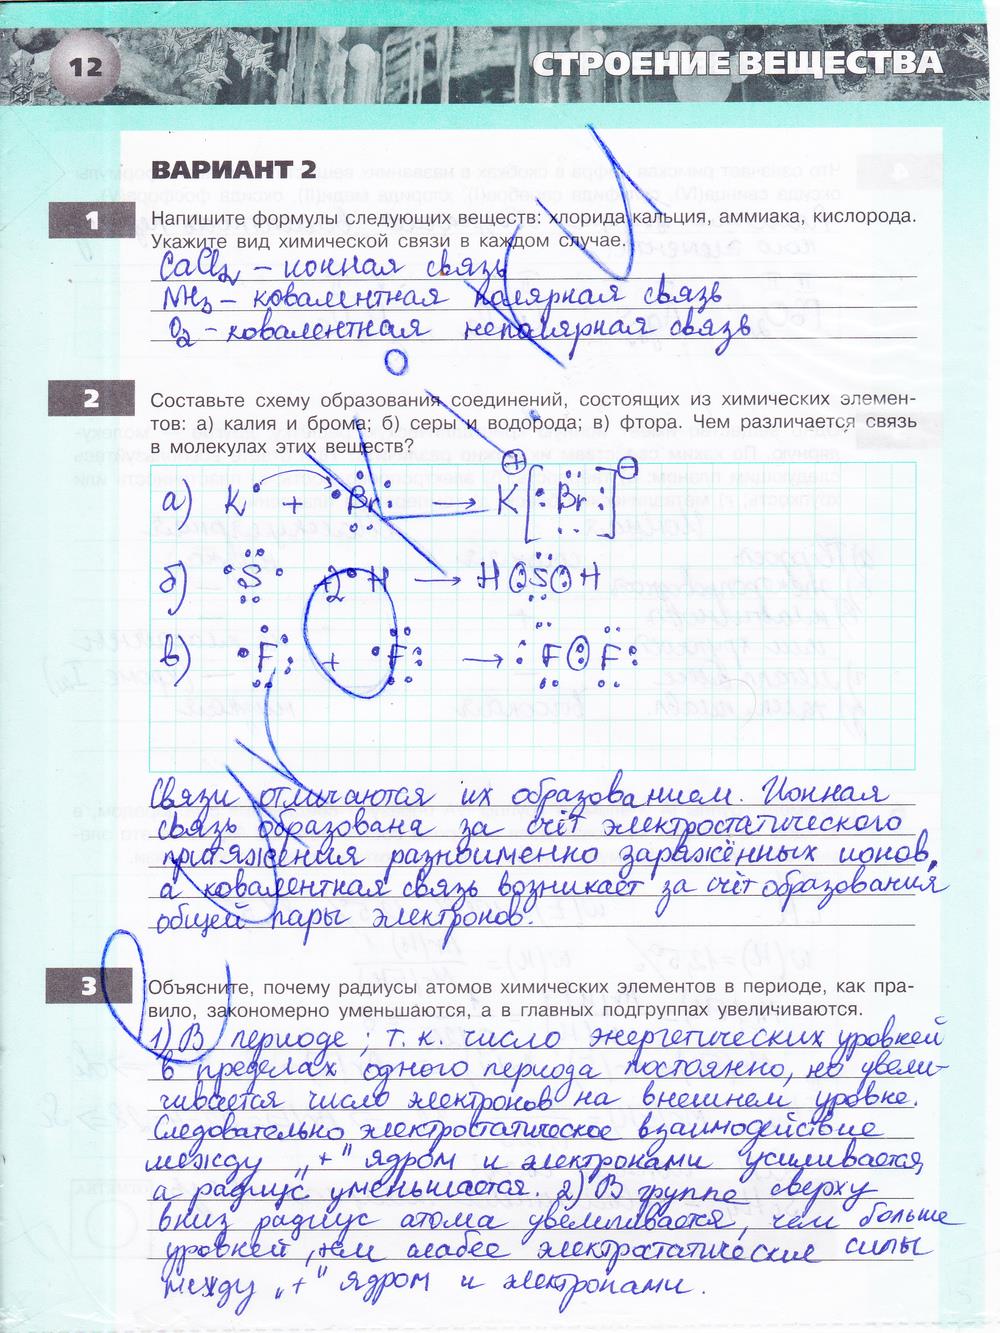 гдз 9 класс тетрадь-экзаменатор страница 12 химия Бобылева, Бирюлина